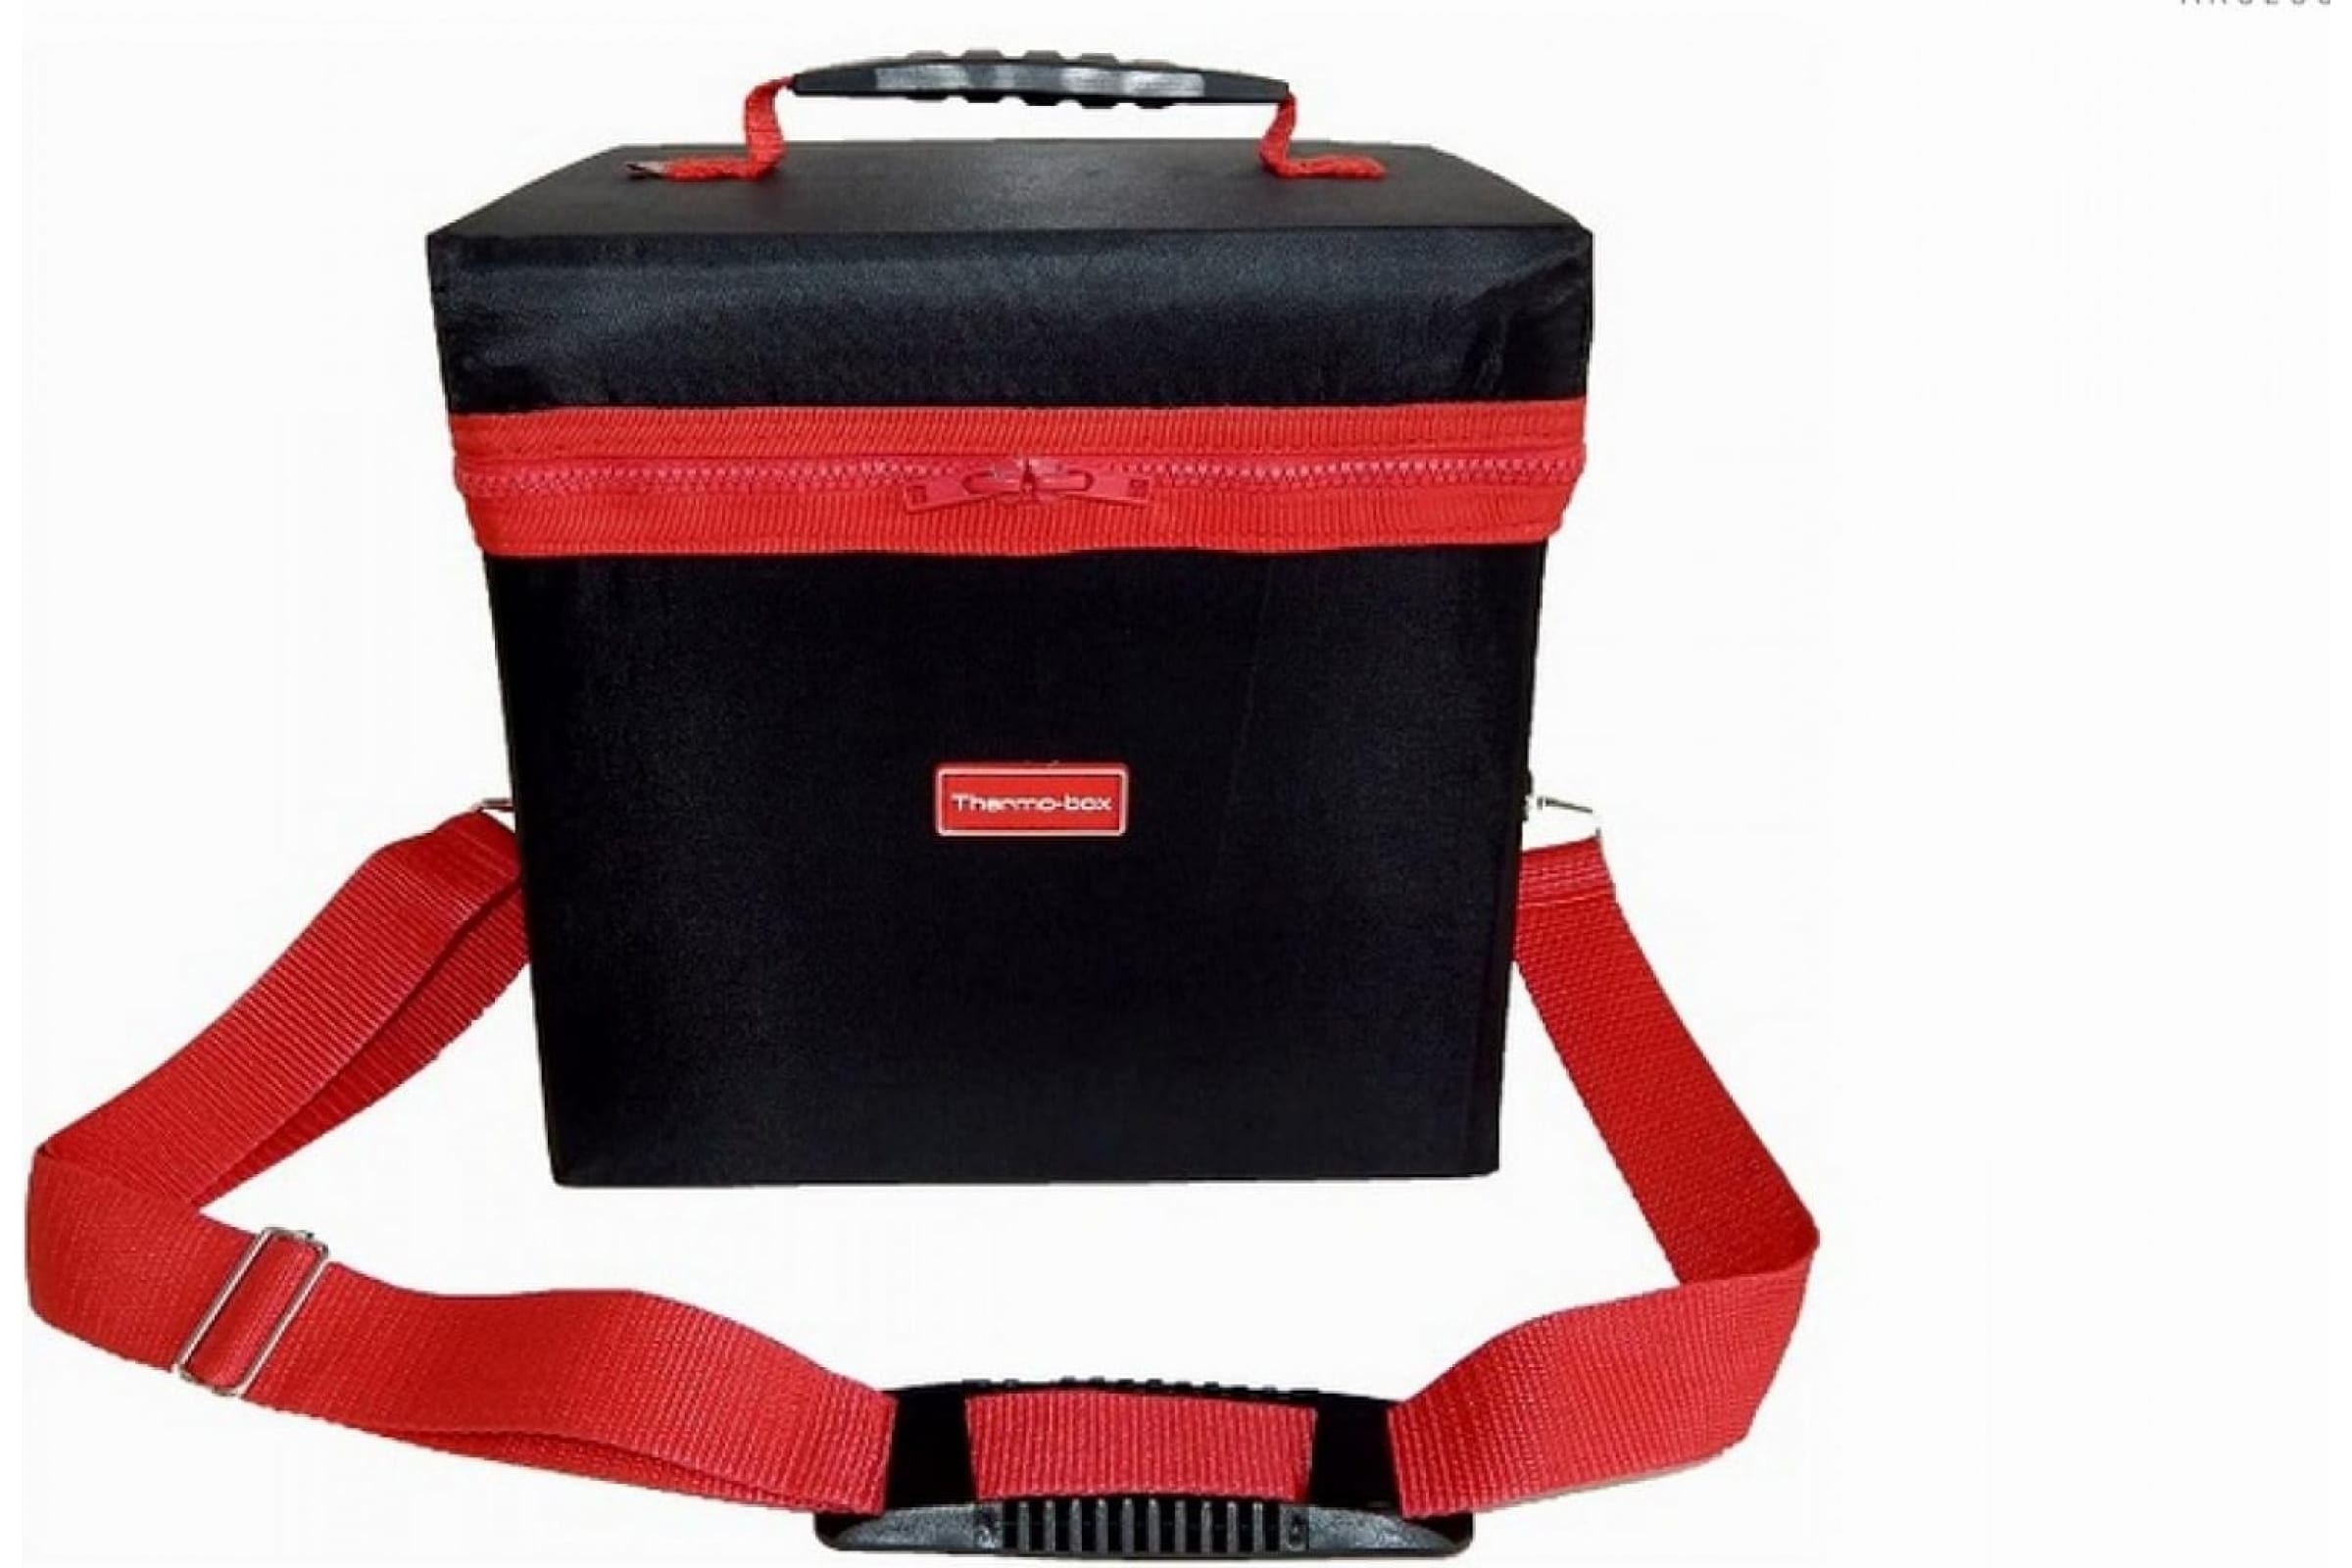 Термосумка Thermo-box (Термо-бокс). Размер L. Цвет: черный с красной окантовкой.